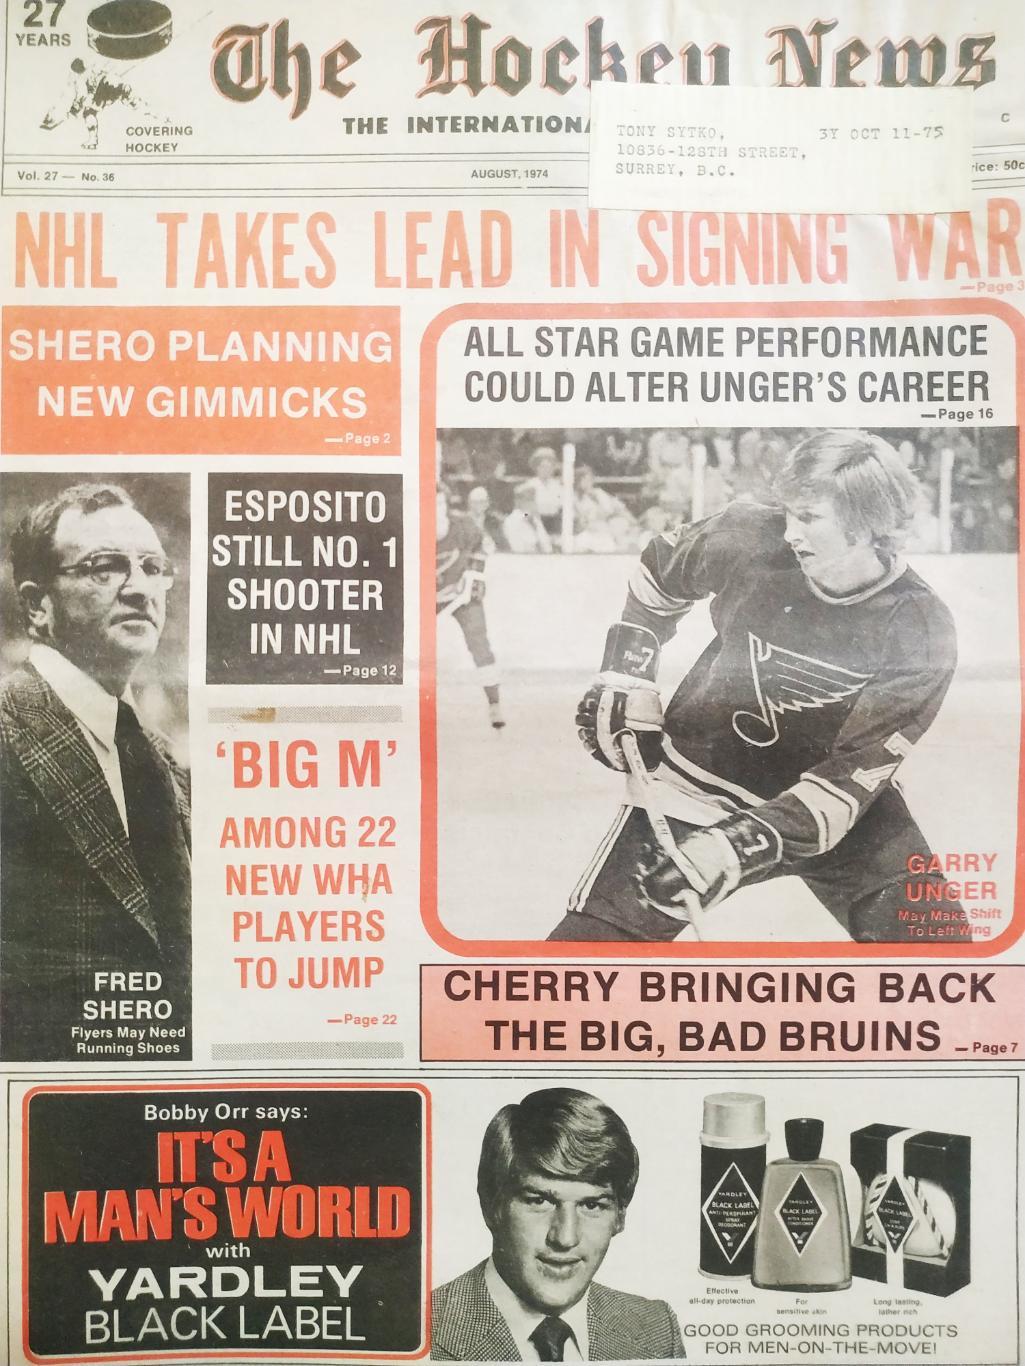 ХОККЕЙ ЖУРНАЛ ЕЖЕНЕДЕЛЬНИК НХЛ НОВОСТИ ХОККЕЯ AUGUST 1974 NHL THE HOCKEY NEWS